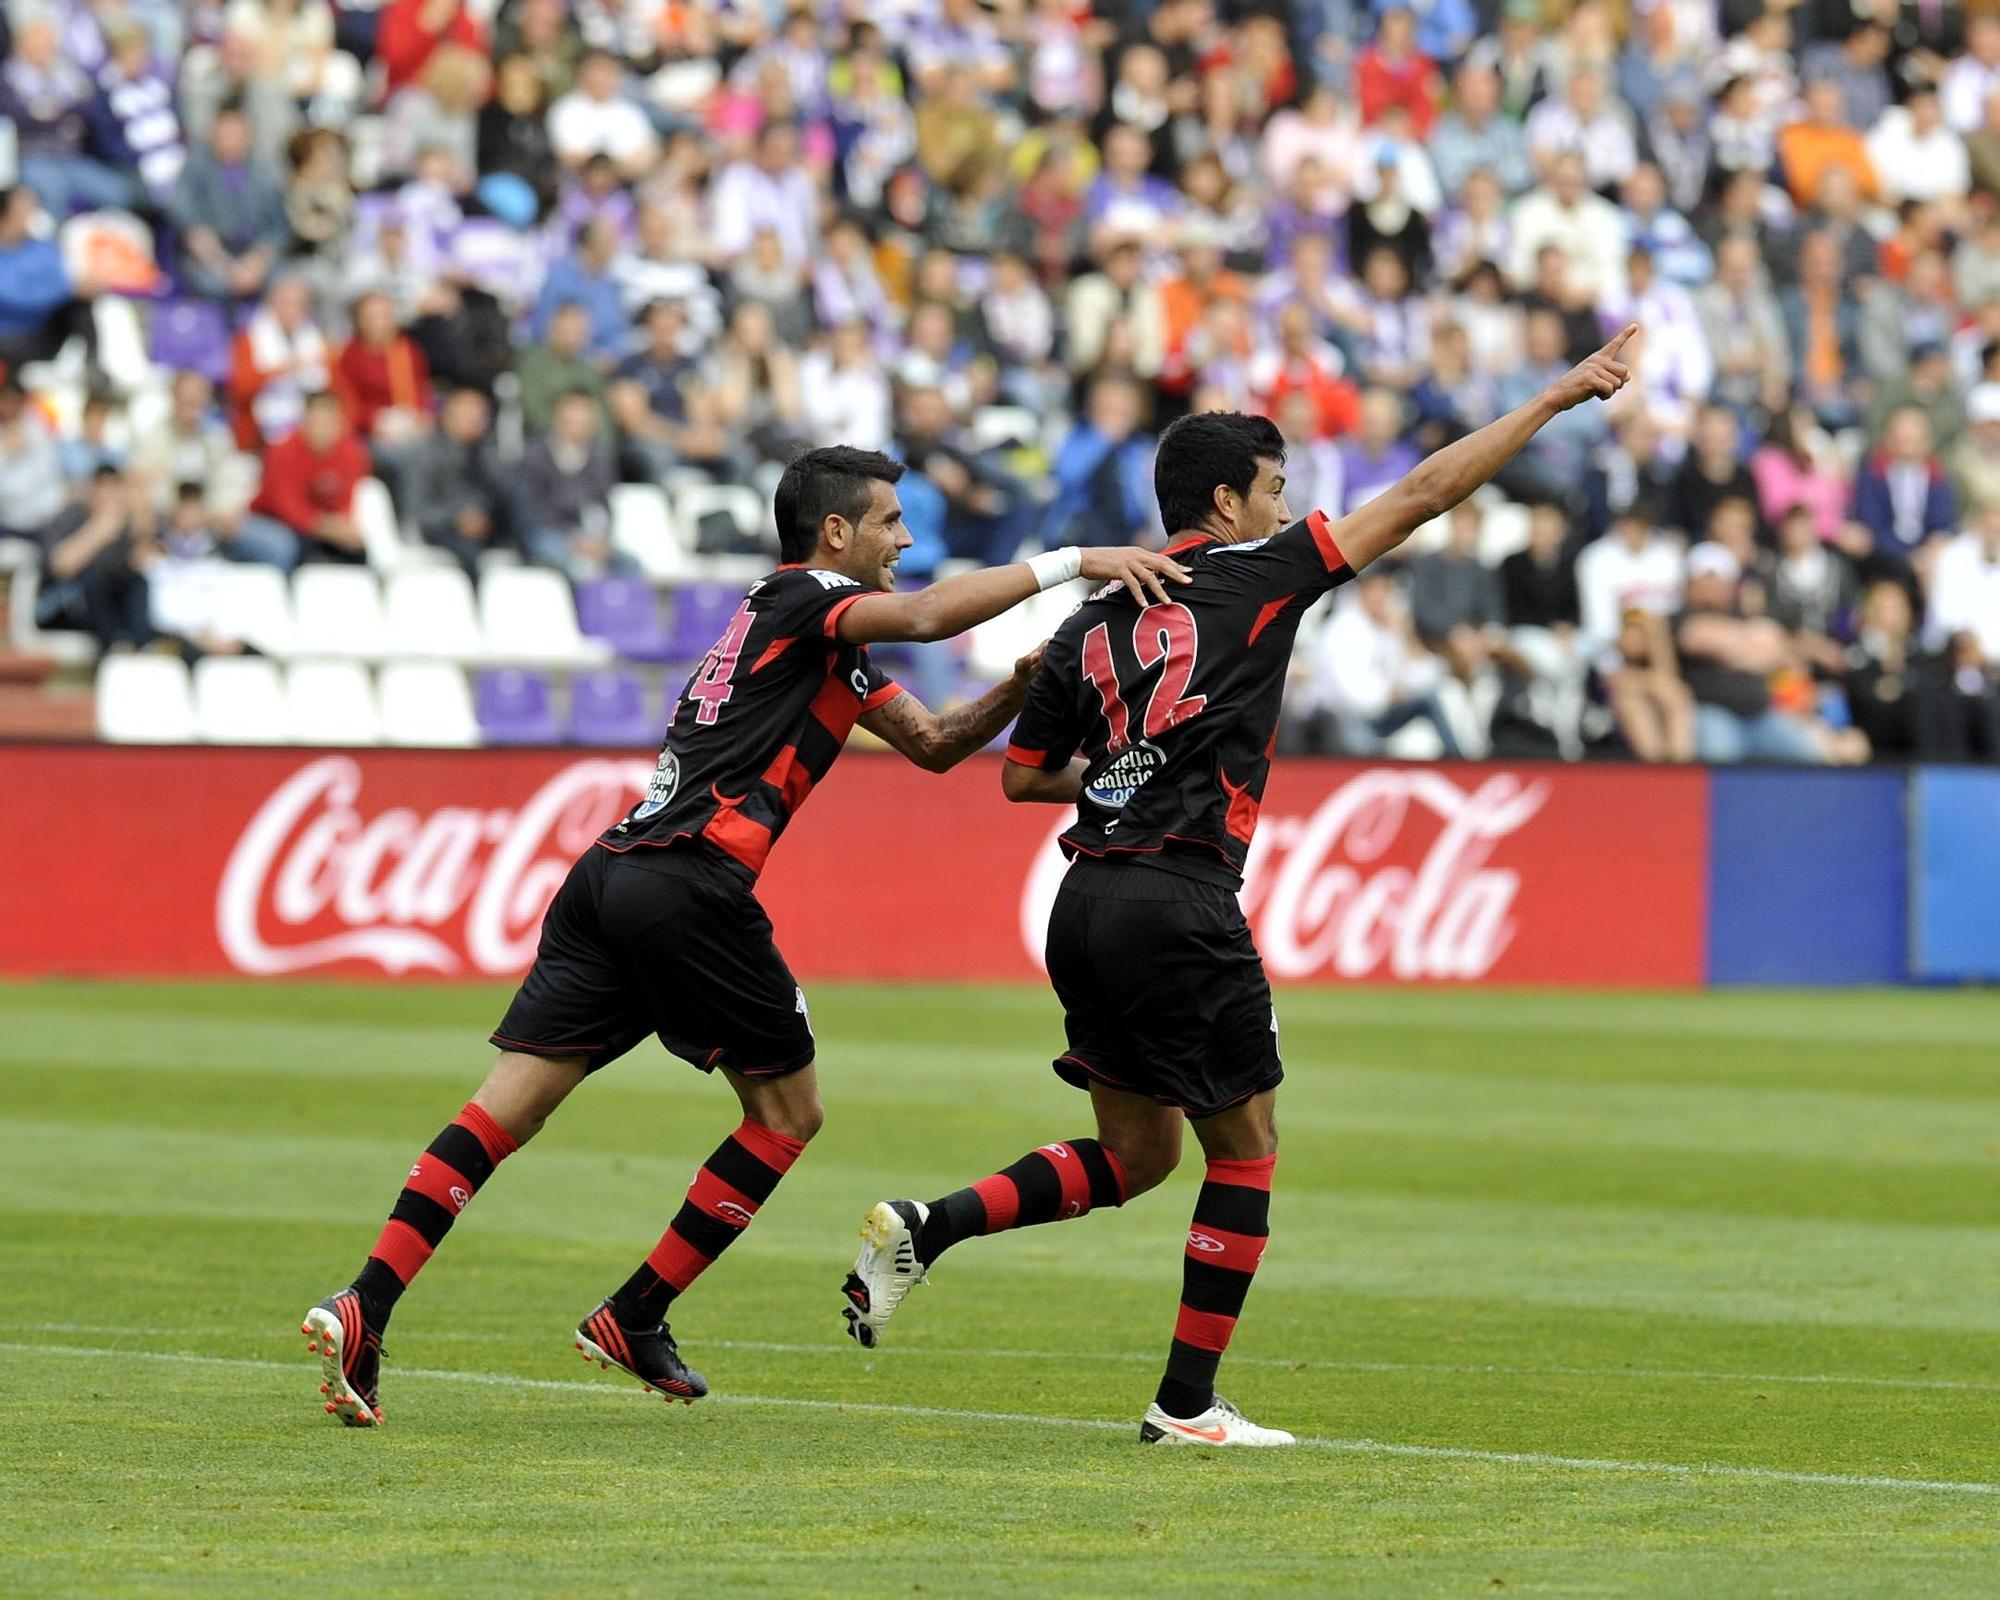 CABRAL 26-5-13 R. Garcia Celebra con Augusto su gol en Valladolid, clave para la permanencia.jpg